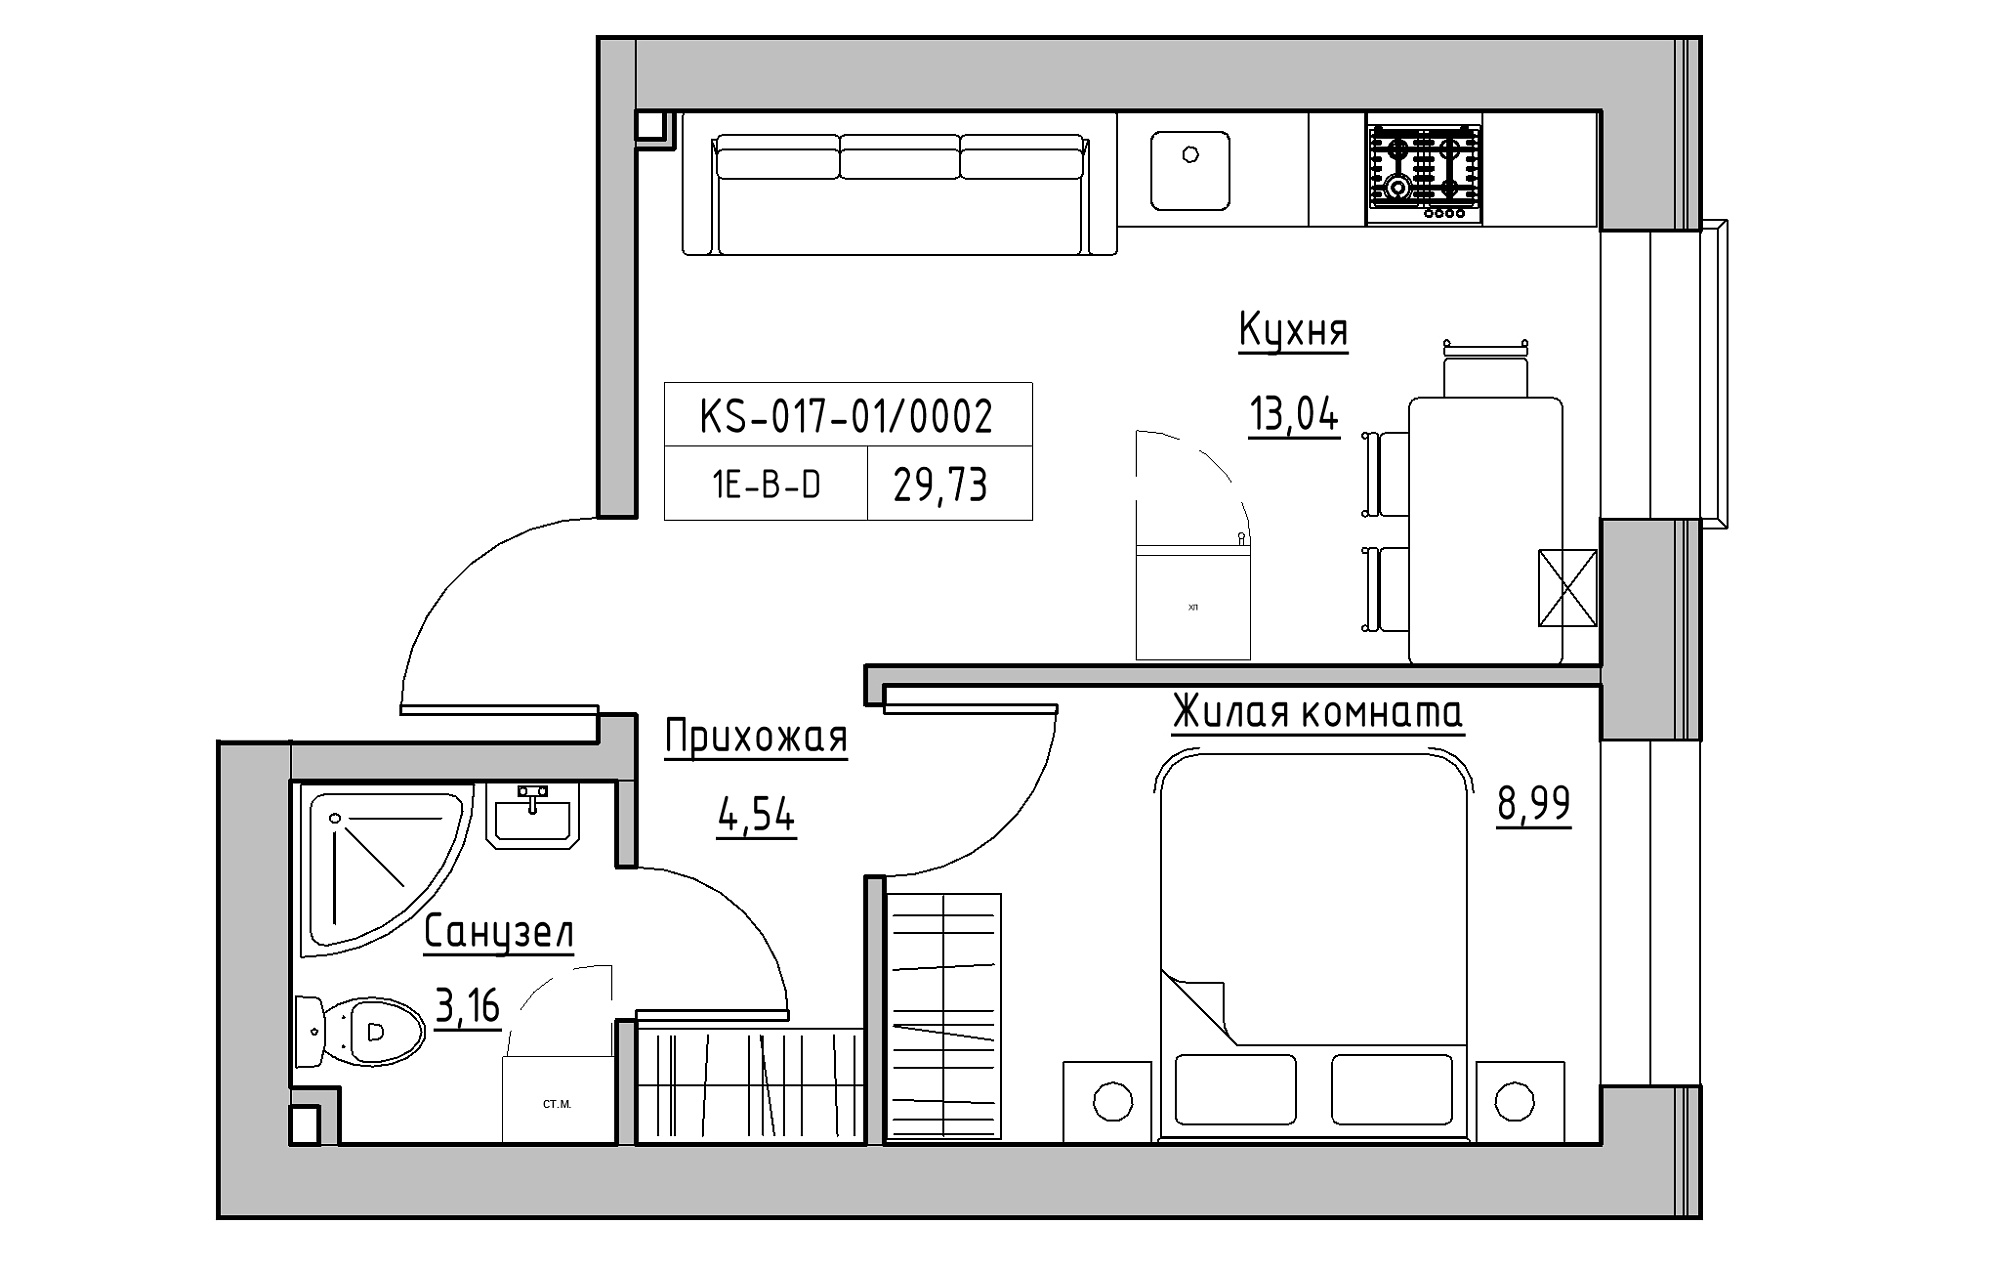 Планировка 1-к квартира площей 29.73м2, KS-017-01/0002.